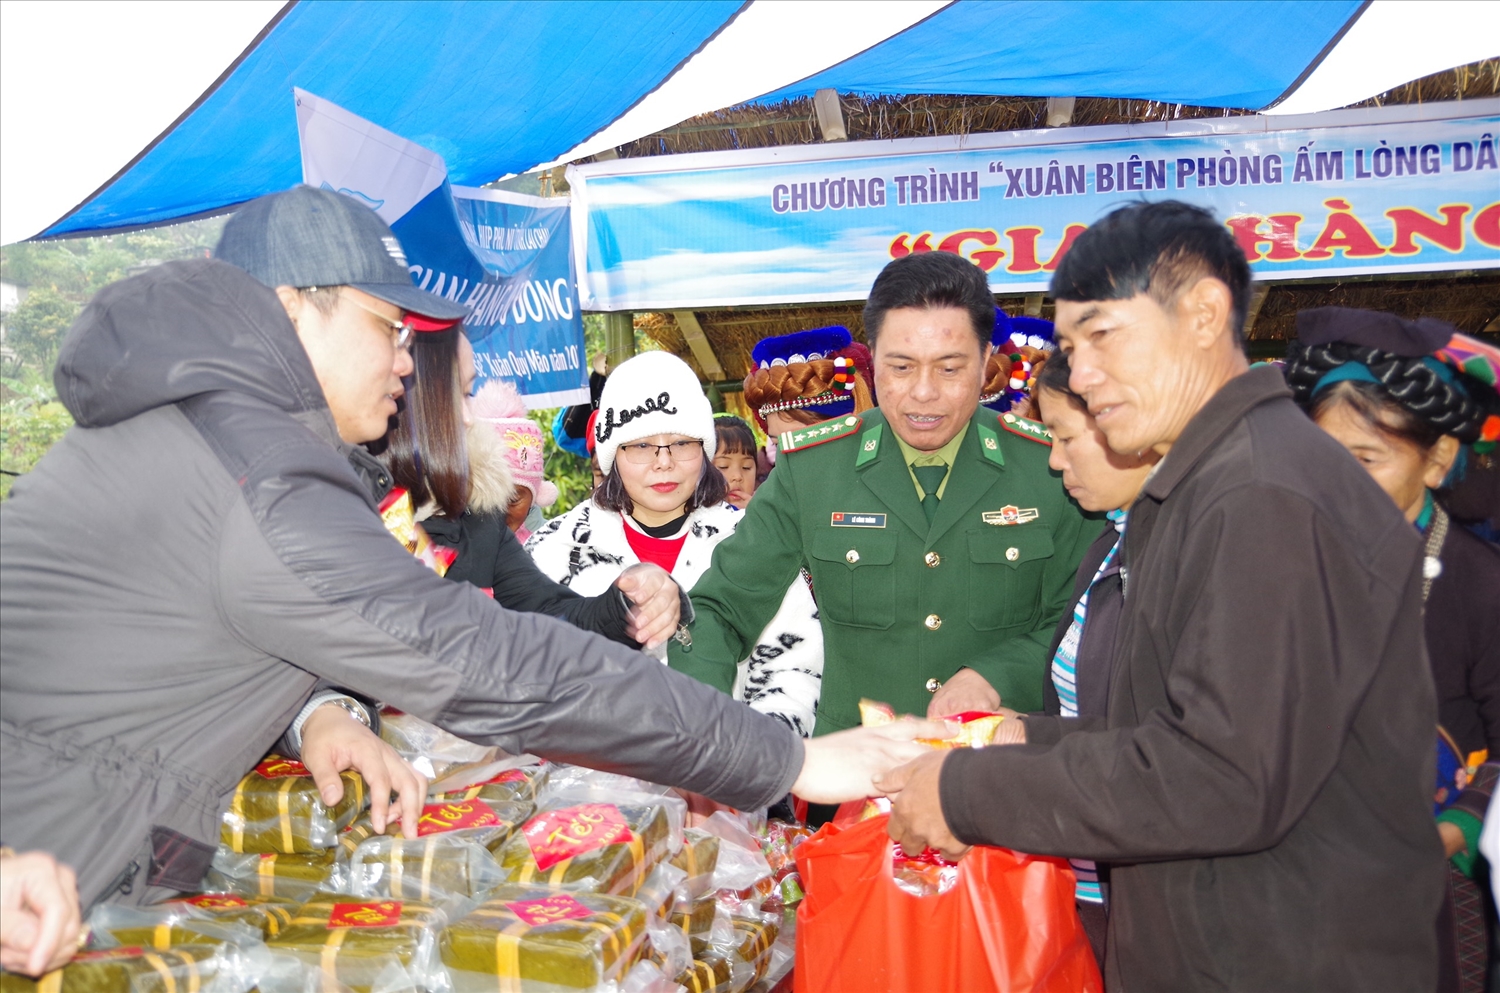 Đại tá Lê Công Thành - Phó Chính ủy BĐBP tỉnh Lai Châu (mặc quân phục) trao quà Tết cho bà con Tả Chải